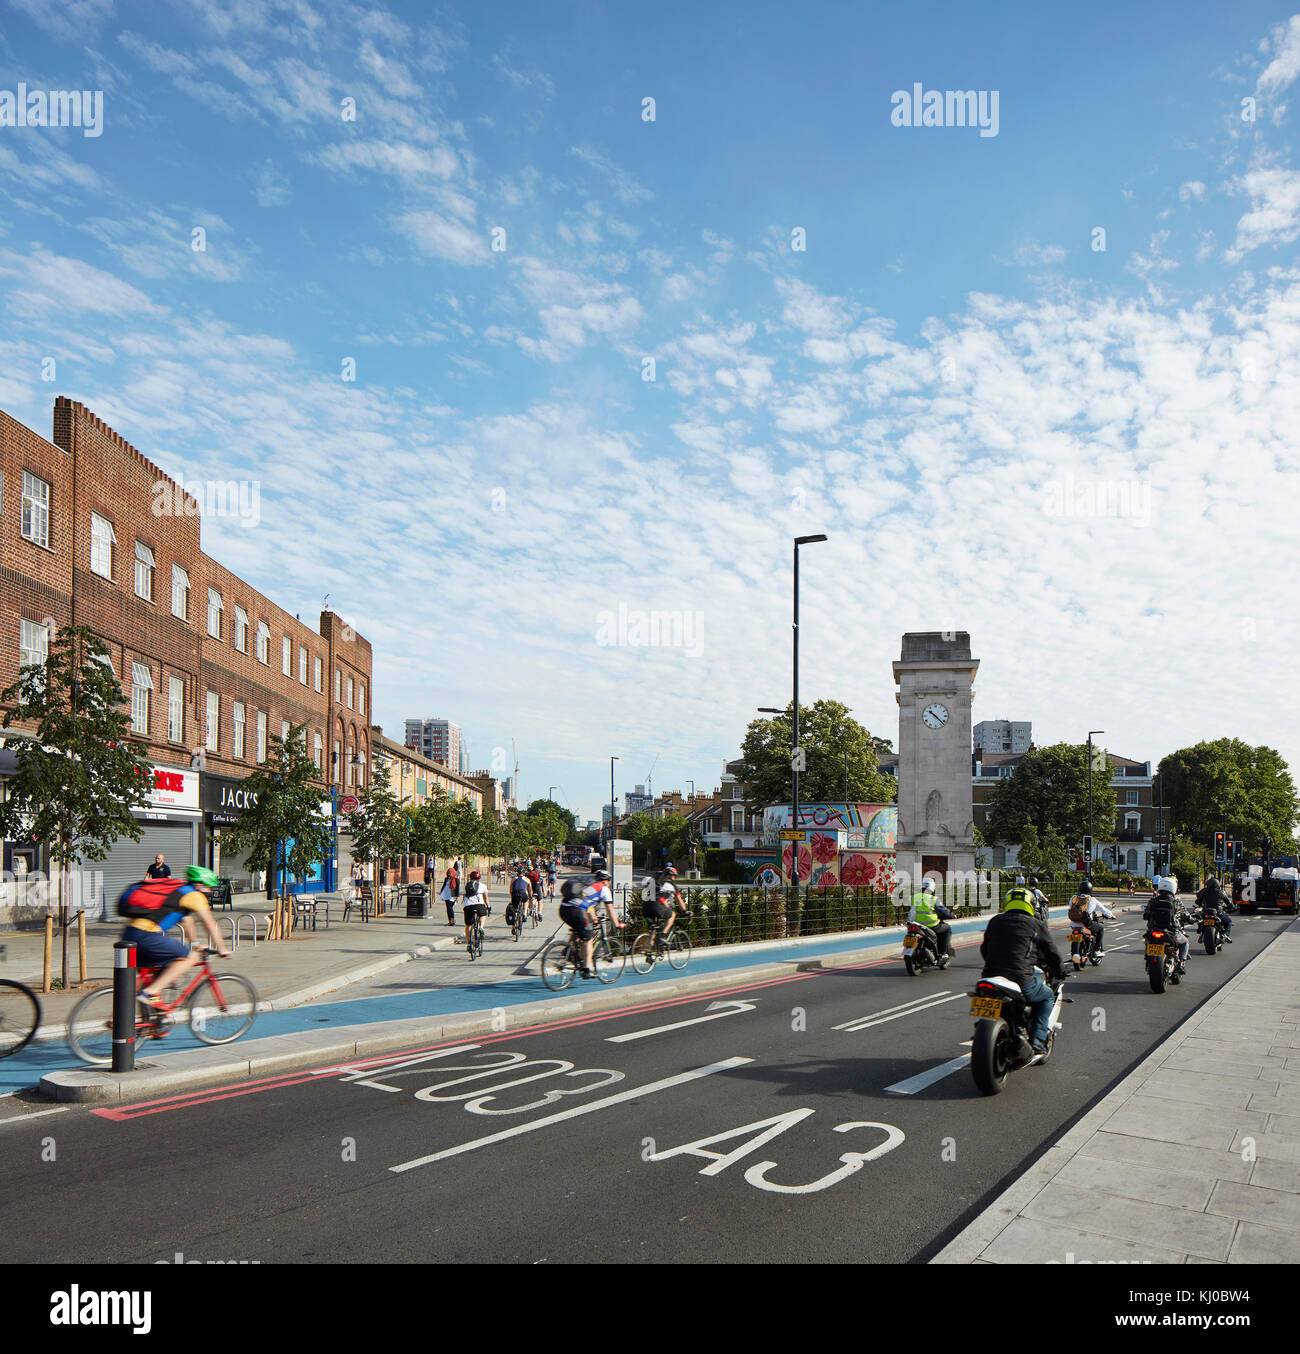 Schnittpunkt mit neuen Rad weg und morgen Verkehr. Stockwell Rahmen Masterplan, London, Vereinigtes Königreich. Architekt: DSDHA, 2017. Stockfoto